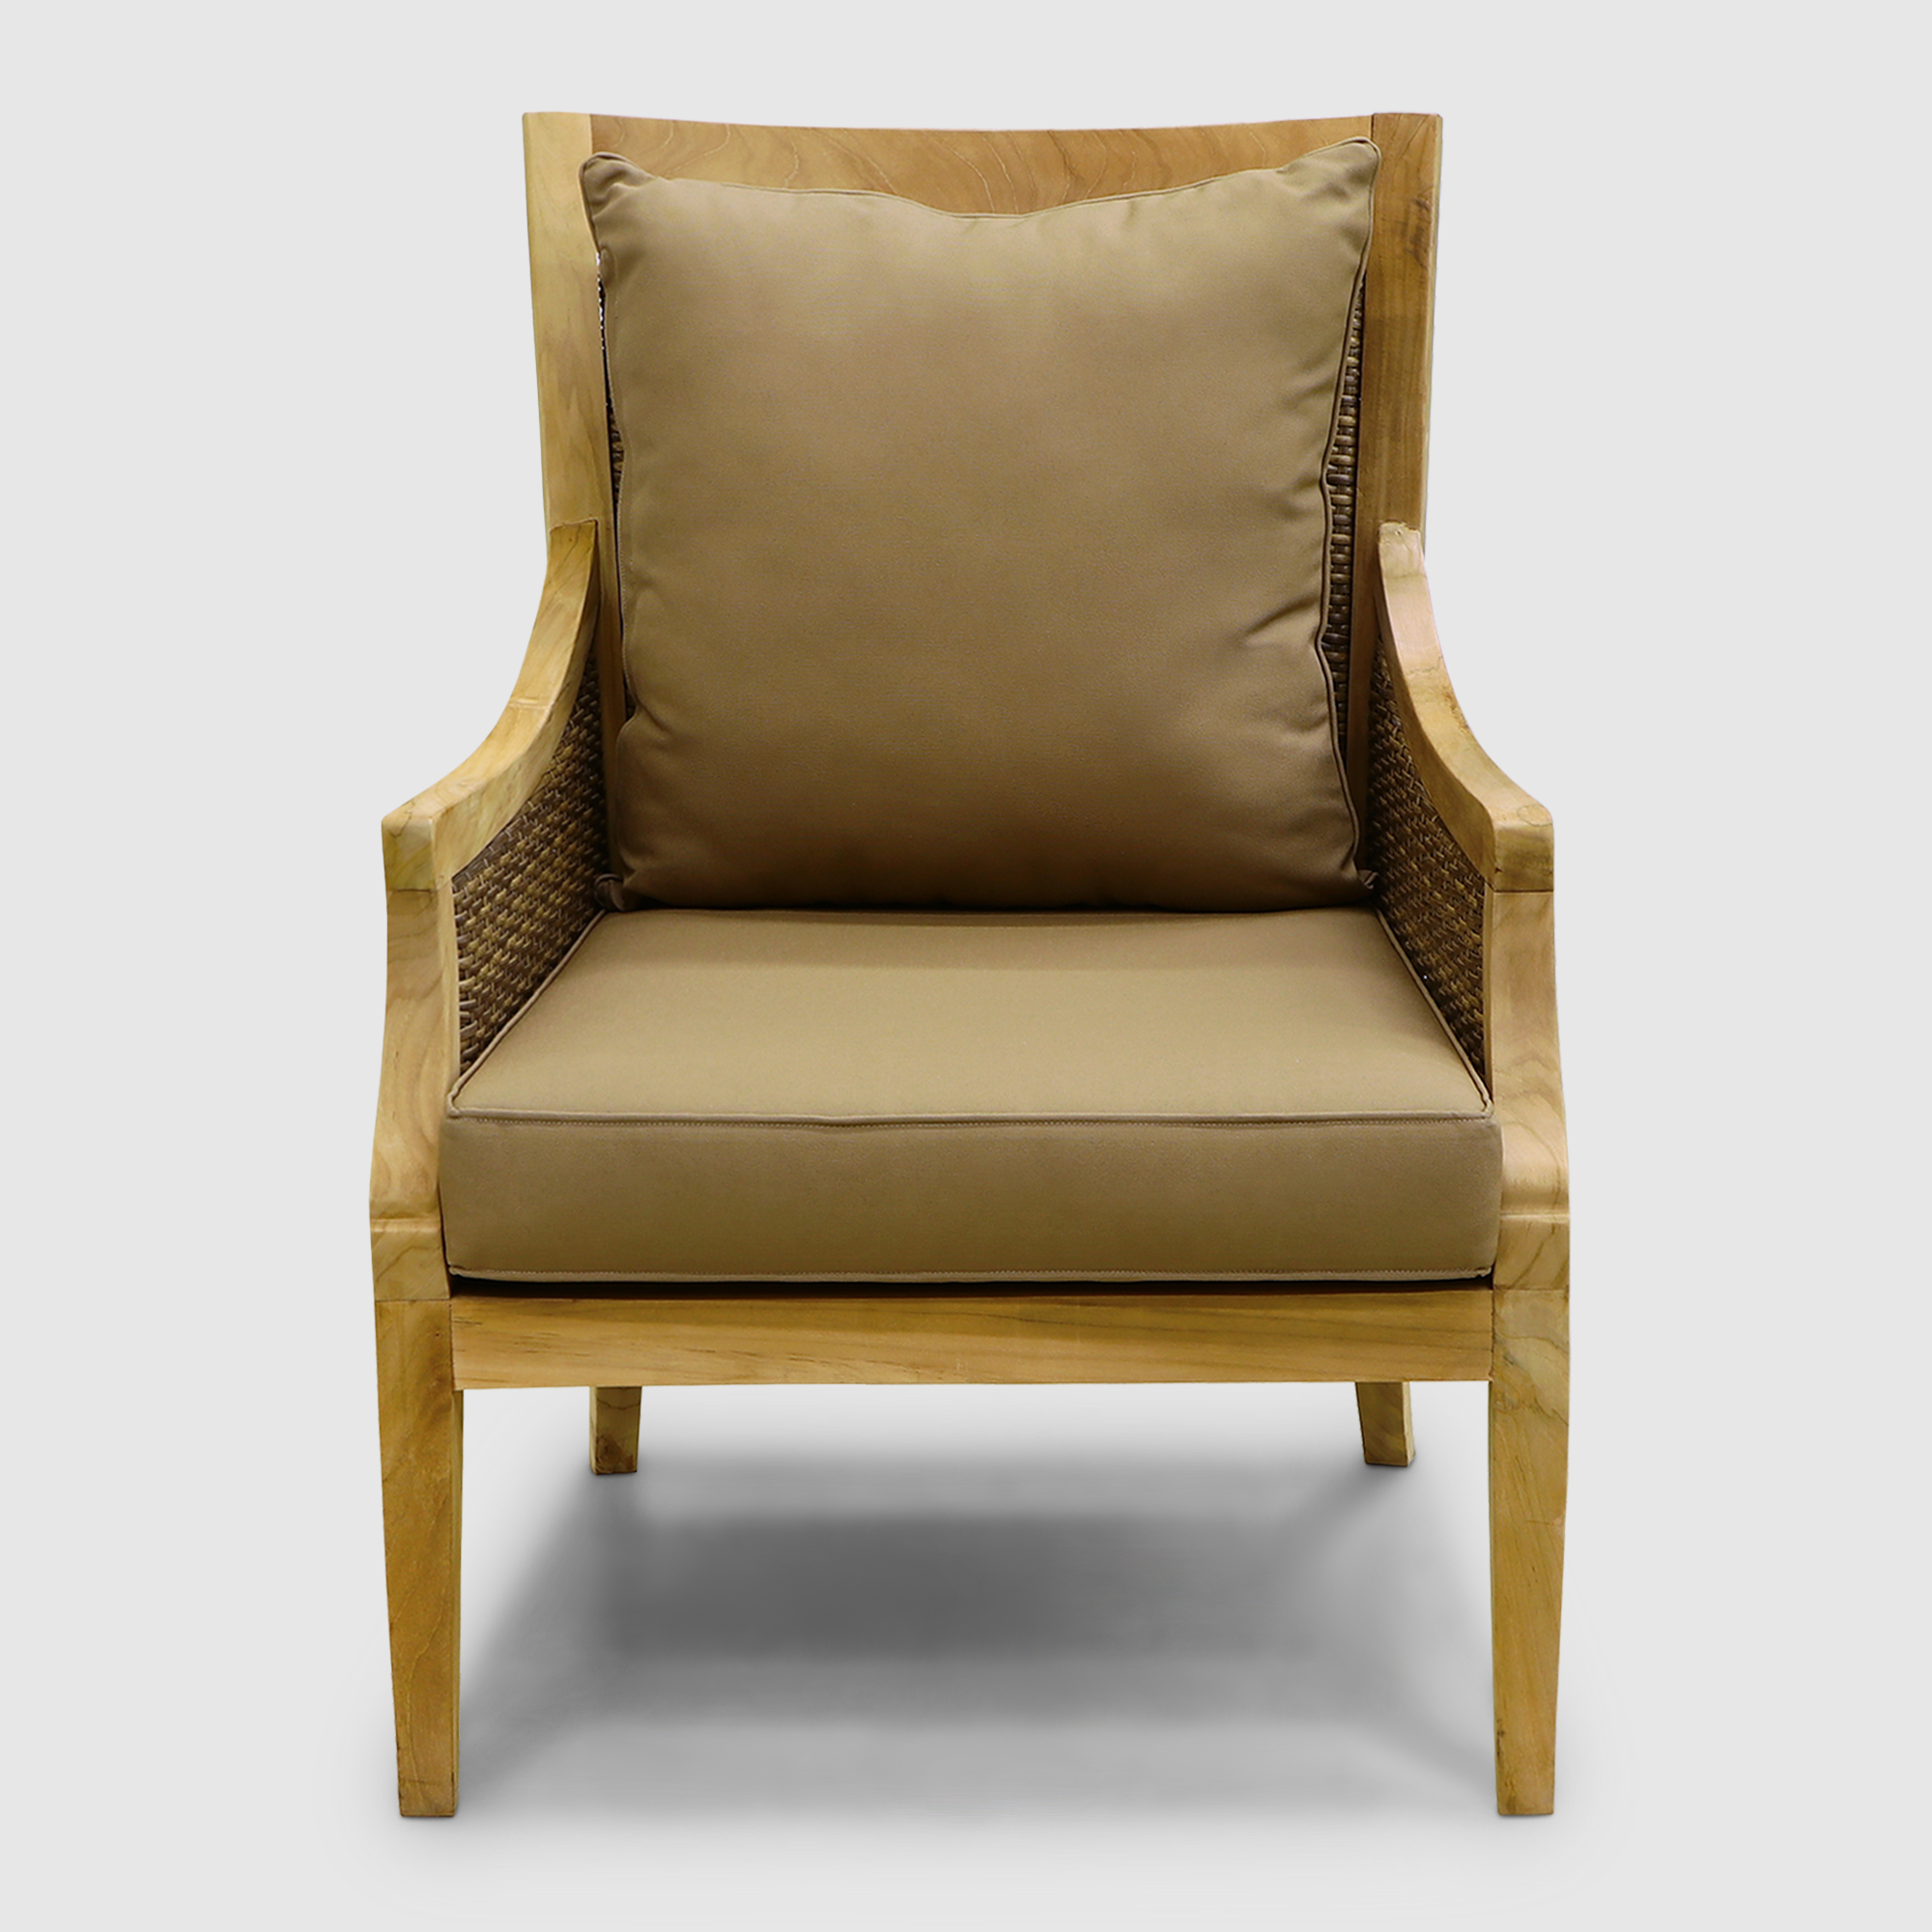 Комплект мебели Jepara oslo 3 предмета, цвет натуральный, размер 77х83х100 см - фото 3